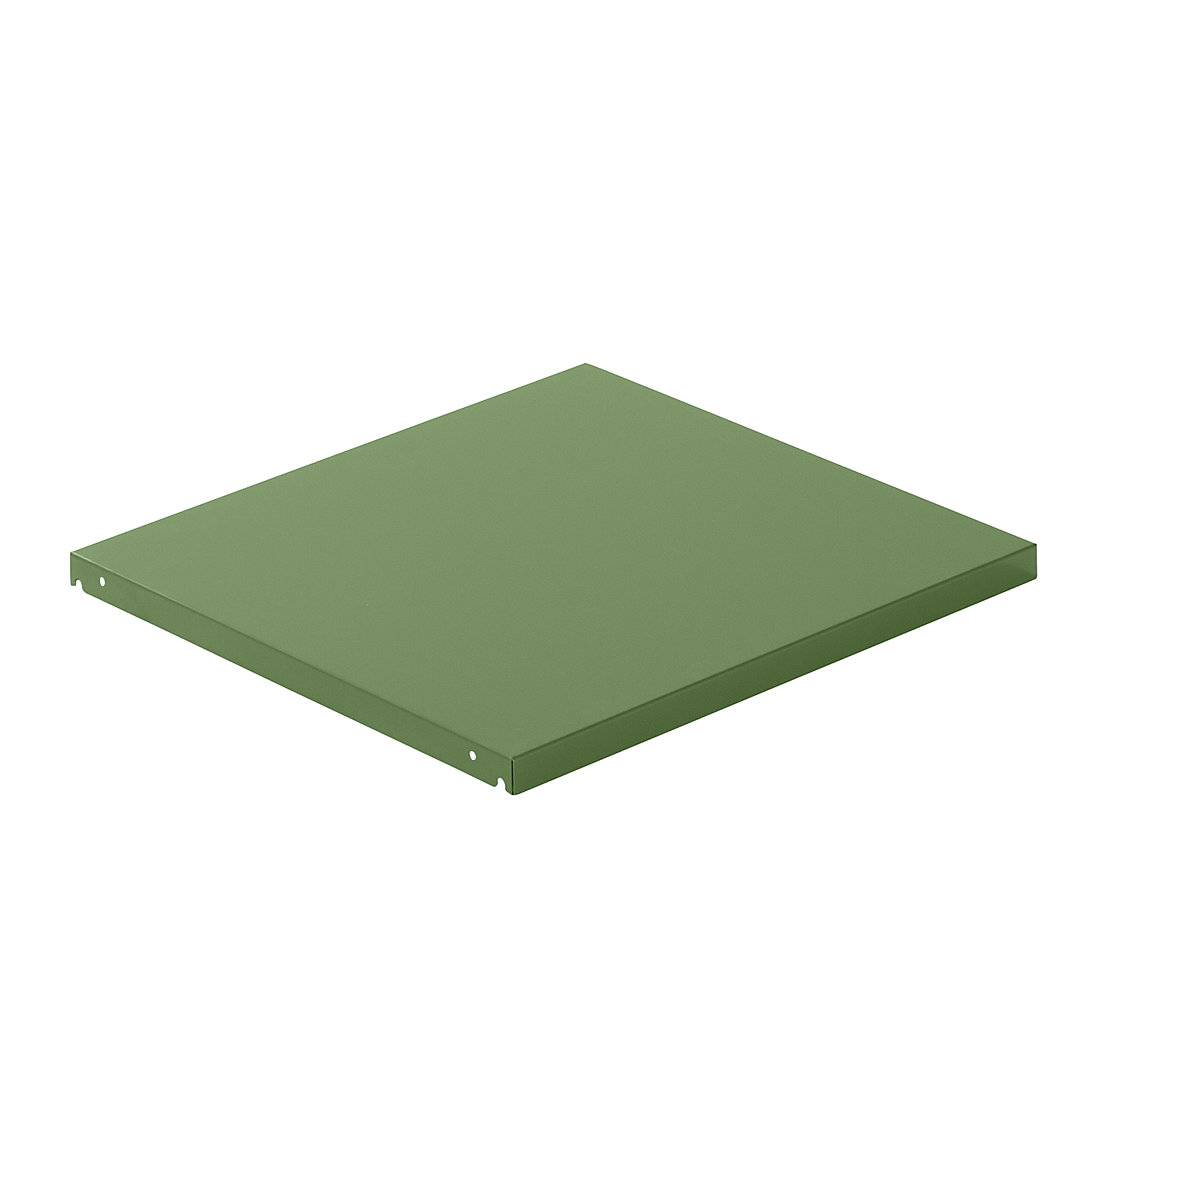 Tablette faîtière en tôle d'acier – LISTA, l x p 890 x 860 mm, charge max. / tablette 200 kg, vert réséda-4